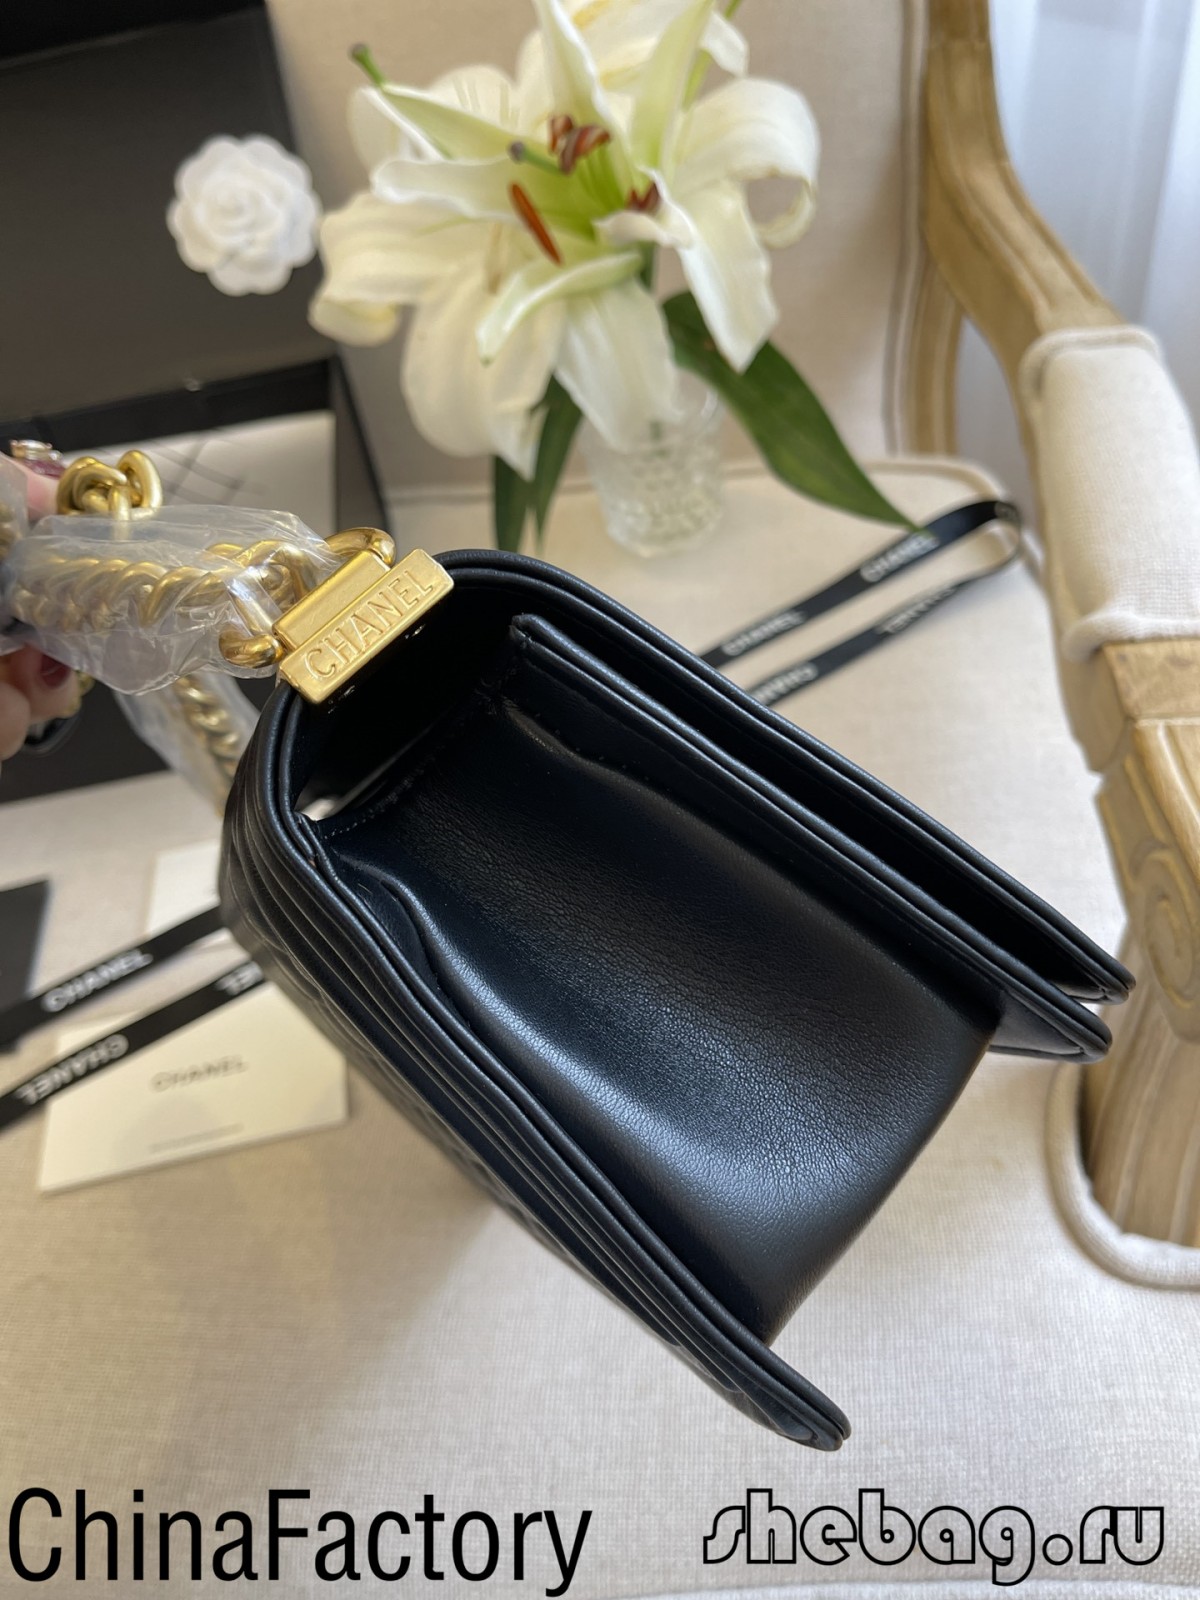 Fonti di replica di borsa Chanel di 2.55 di migliore qualità in Cina (aghjurnata in 2022) - Best Quality Fake Louis Vuitton Bag Online Store, Replica designer bag ru